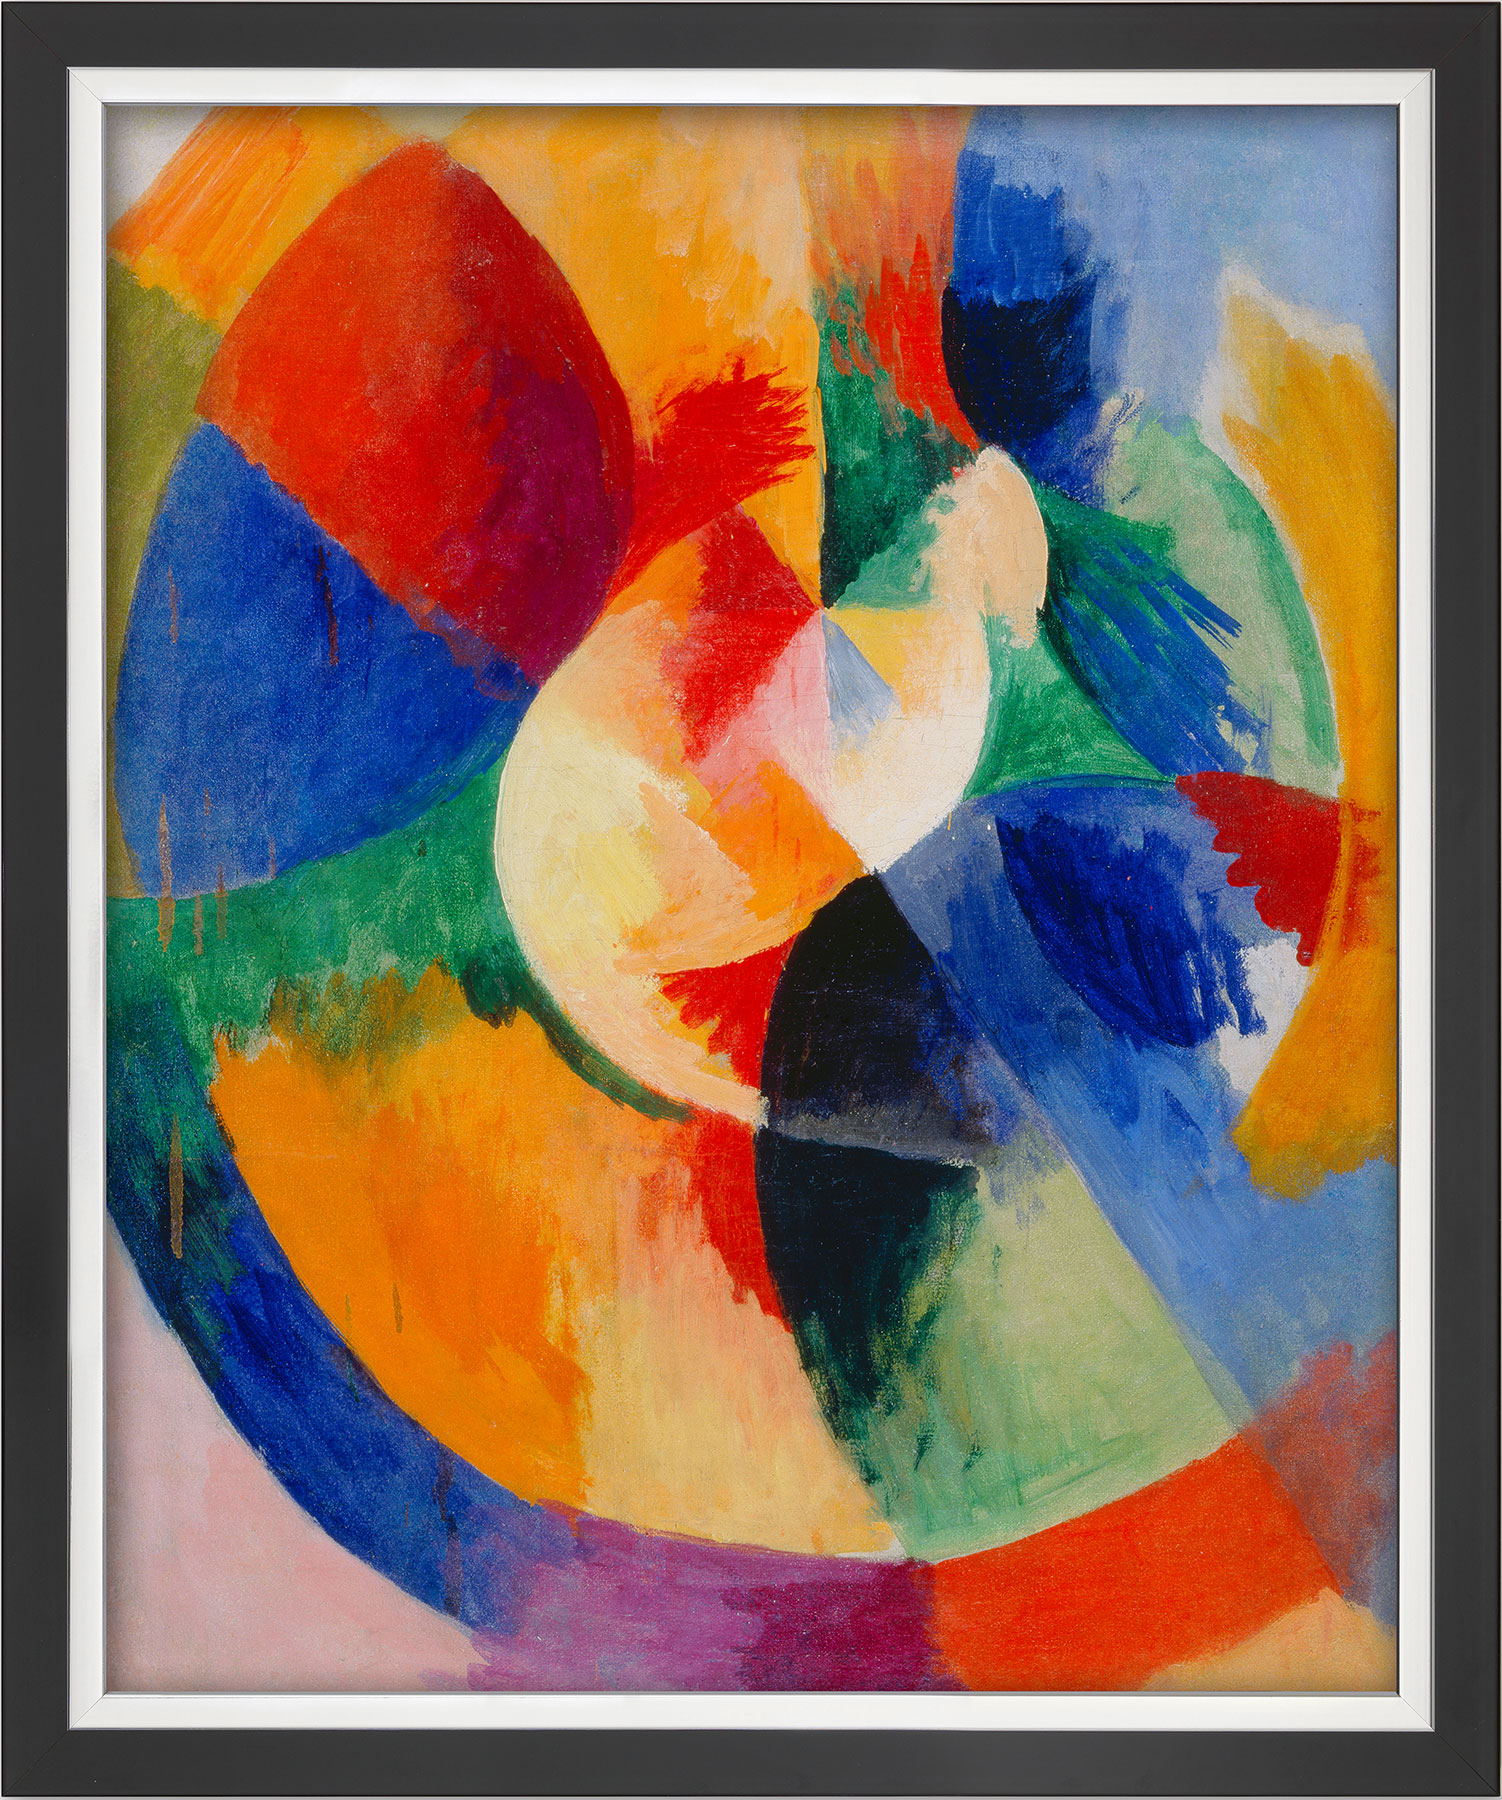 Bild "Kreisformen, Sonne (Formes circulaires, soleil)" (1912/13), gerahmt von Robert Delaunay